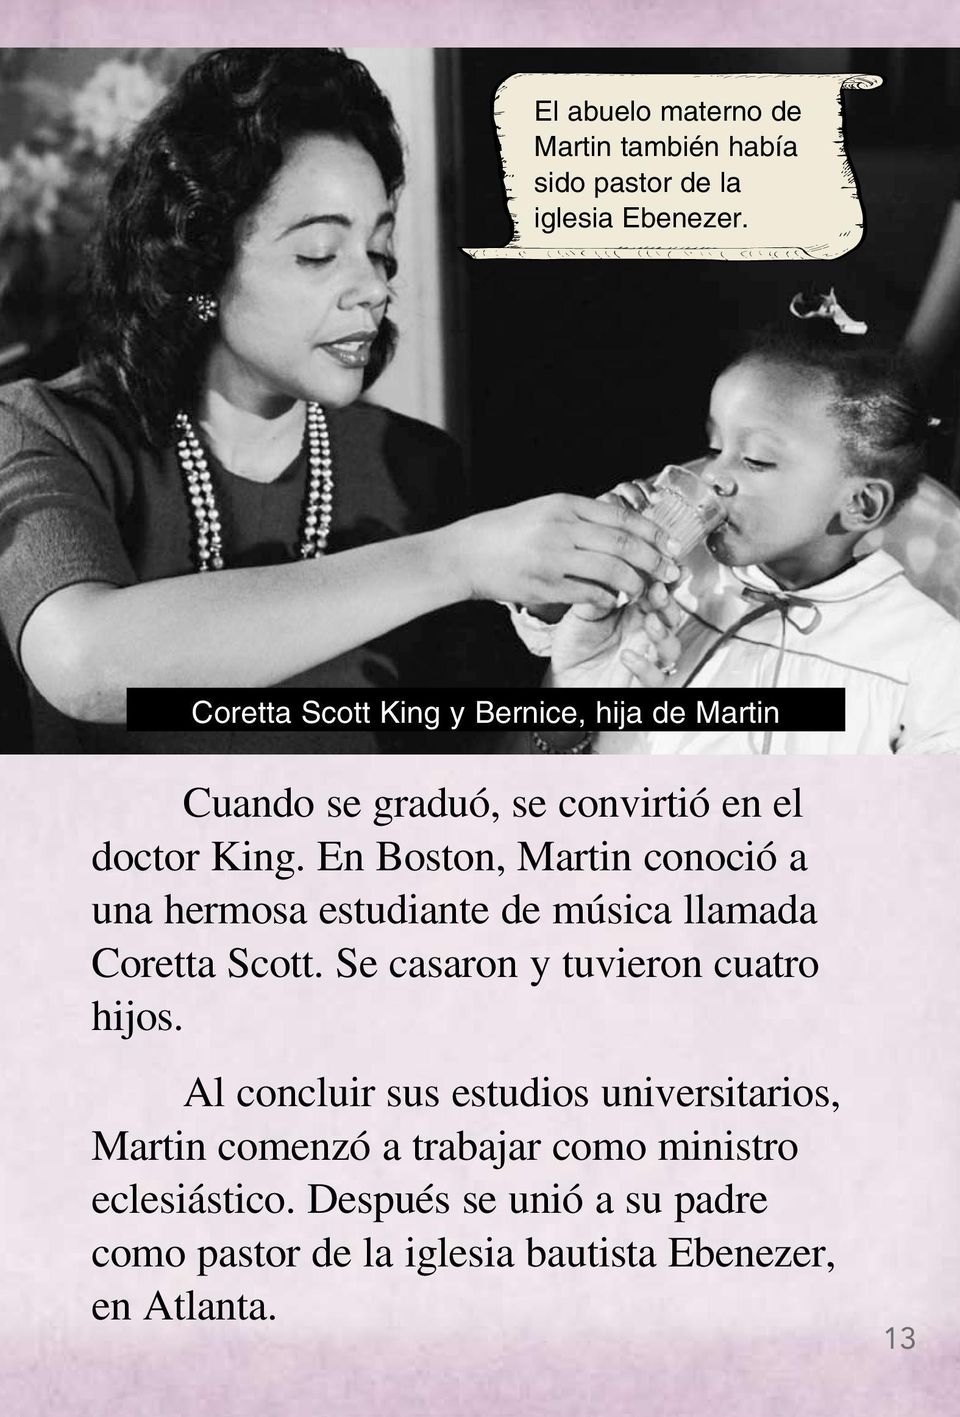 En Boston, Martin conoció a una hermosa estudiante de música llamada Coretta Scott. Se casaron y tuvieron cuatro hijos.